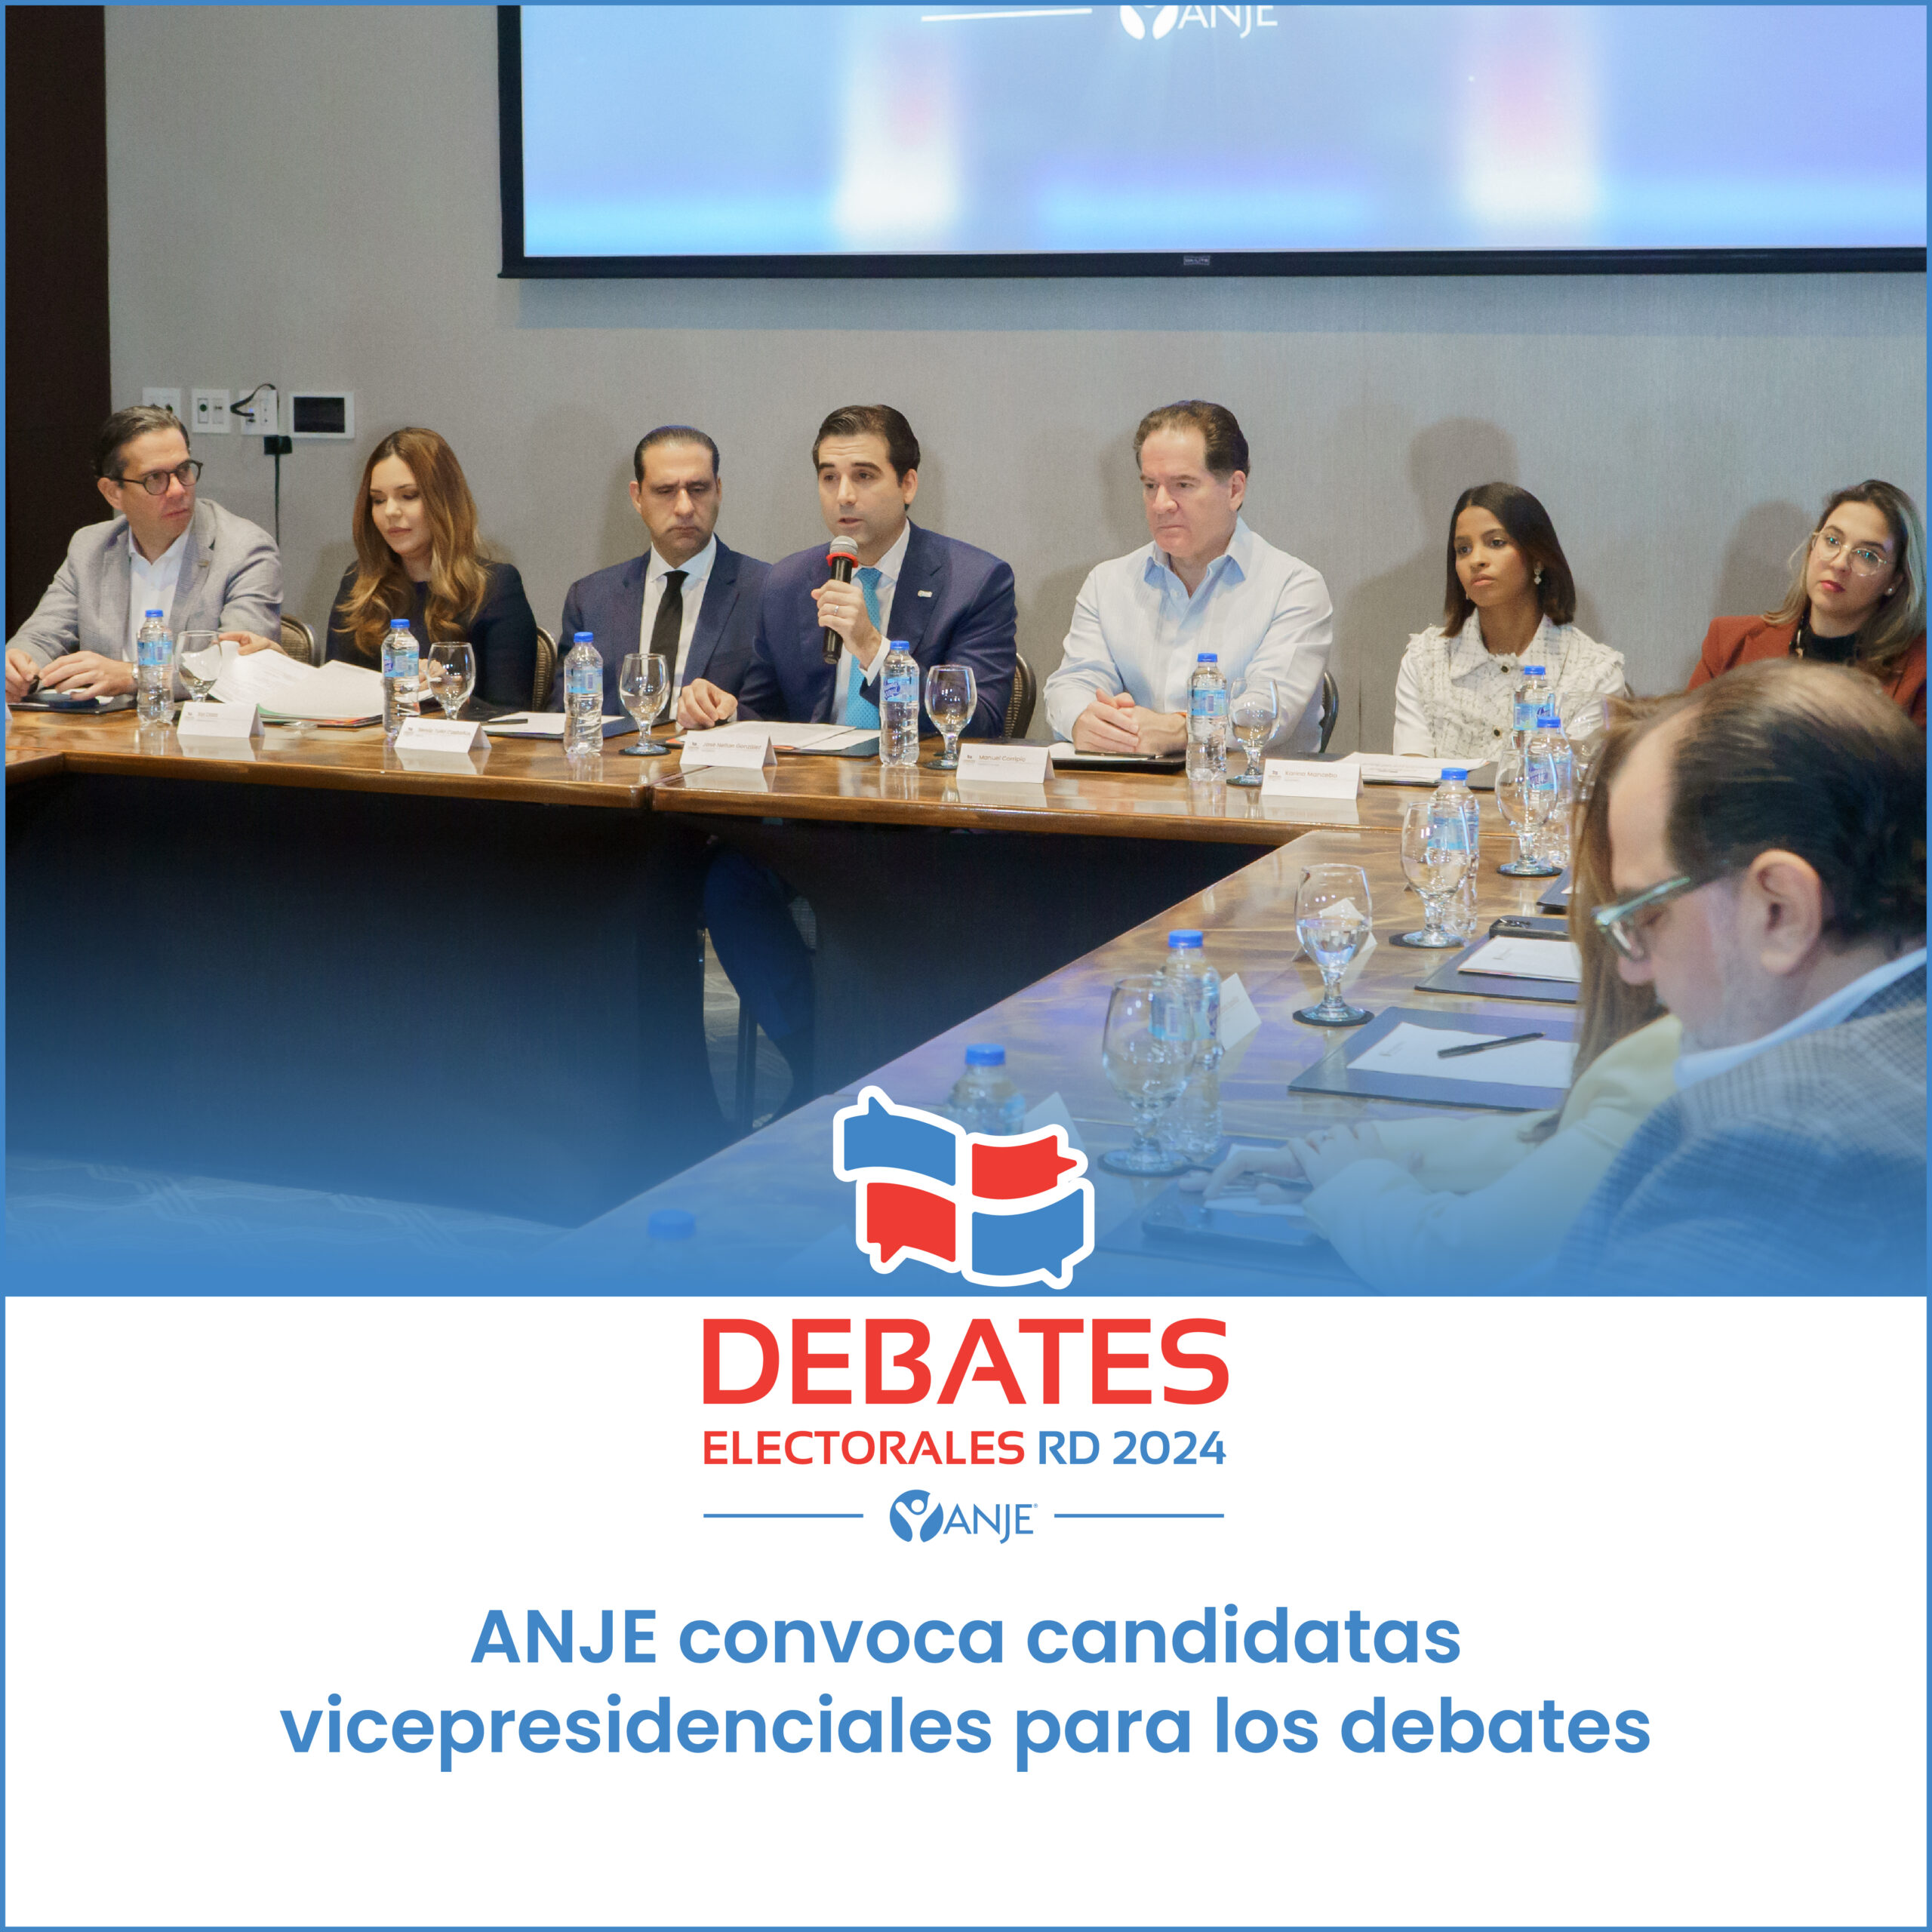 ANJE convoca candidatas vicepresidenciales para los debates